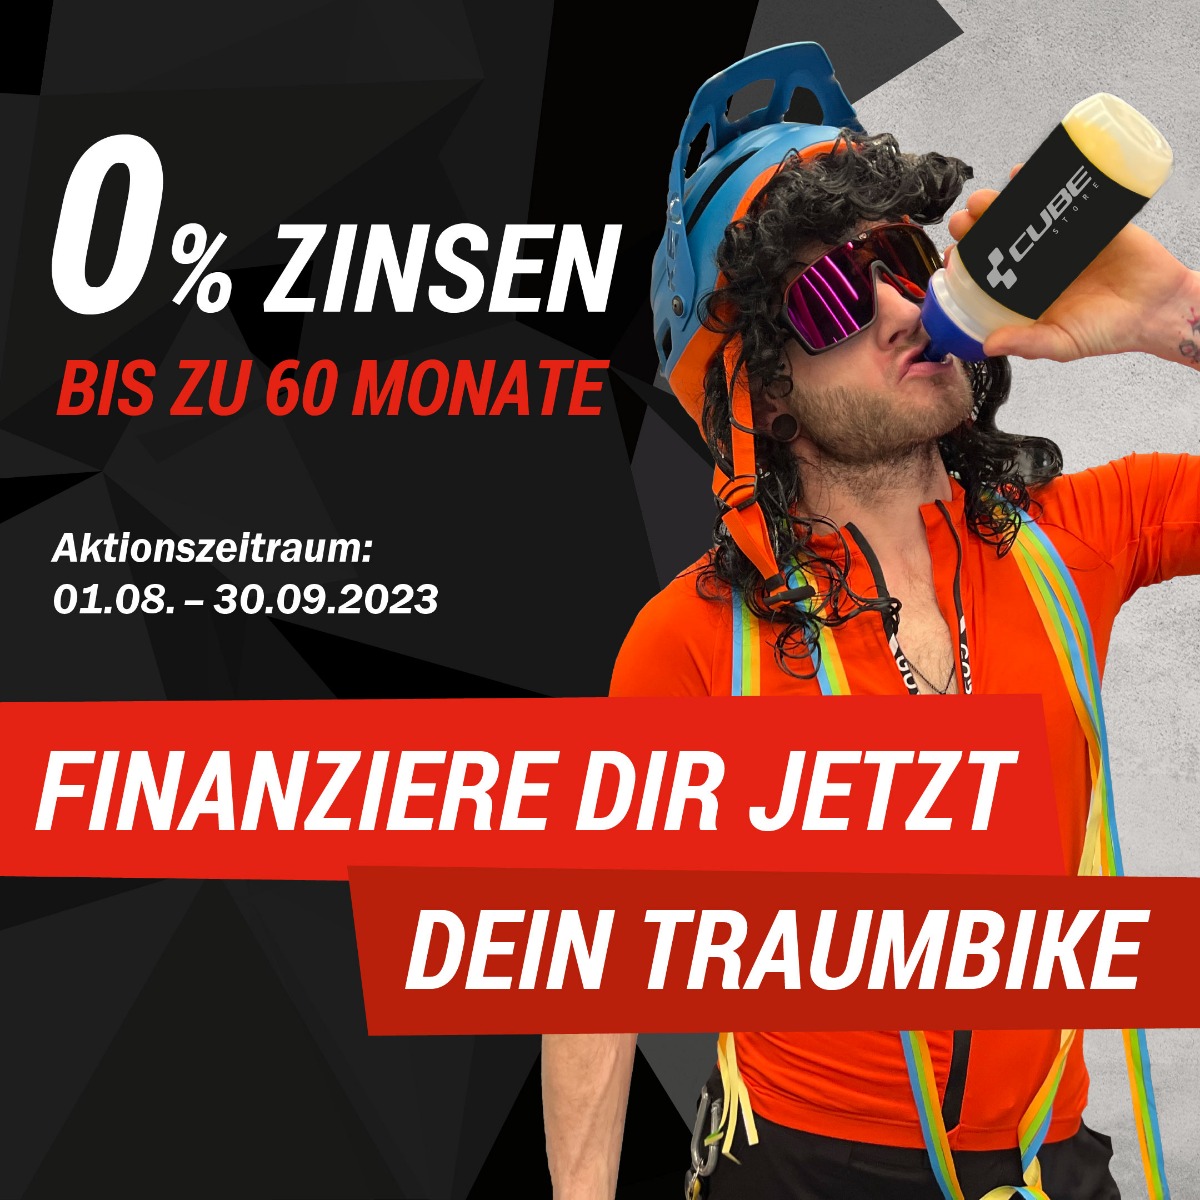 0% Fahrrad Finanzierung im CUBE Store Rostock